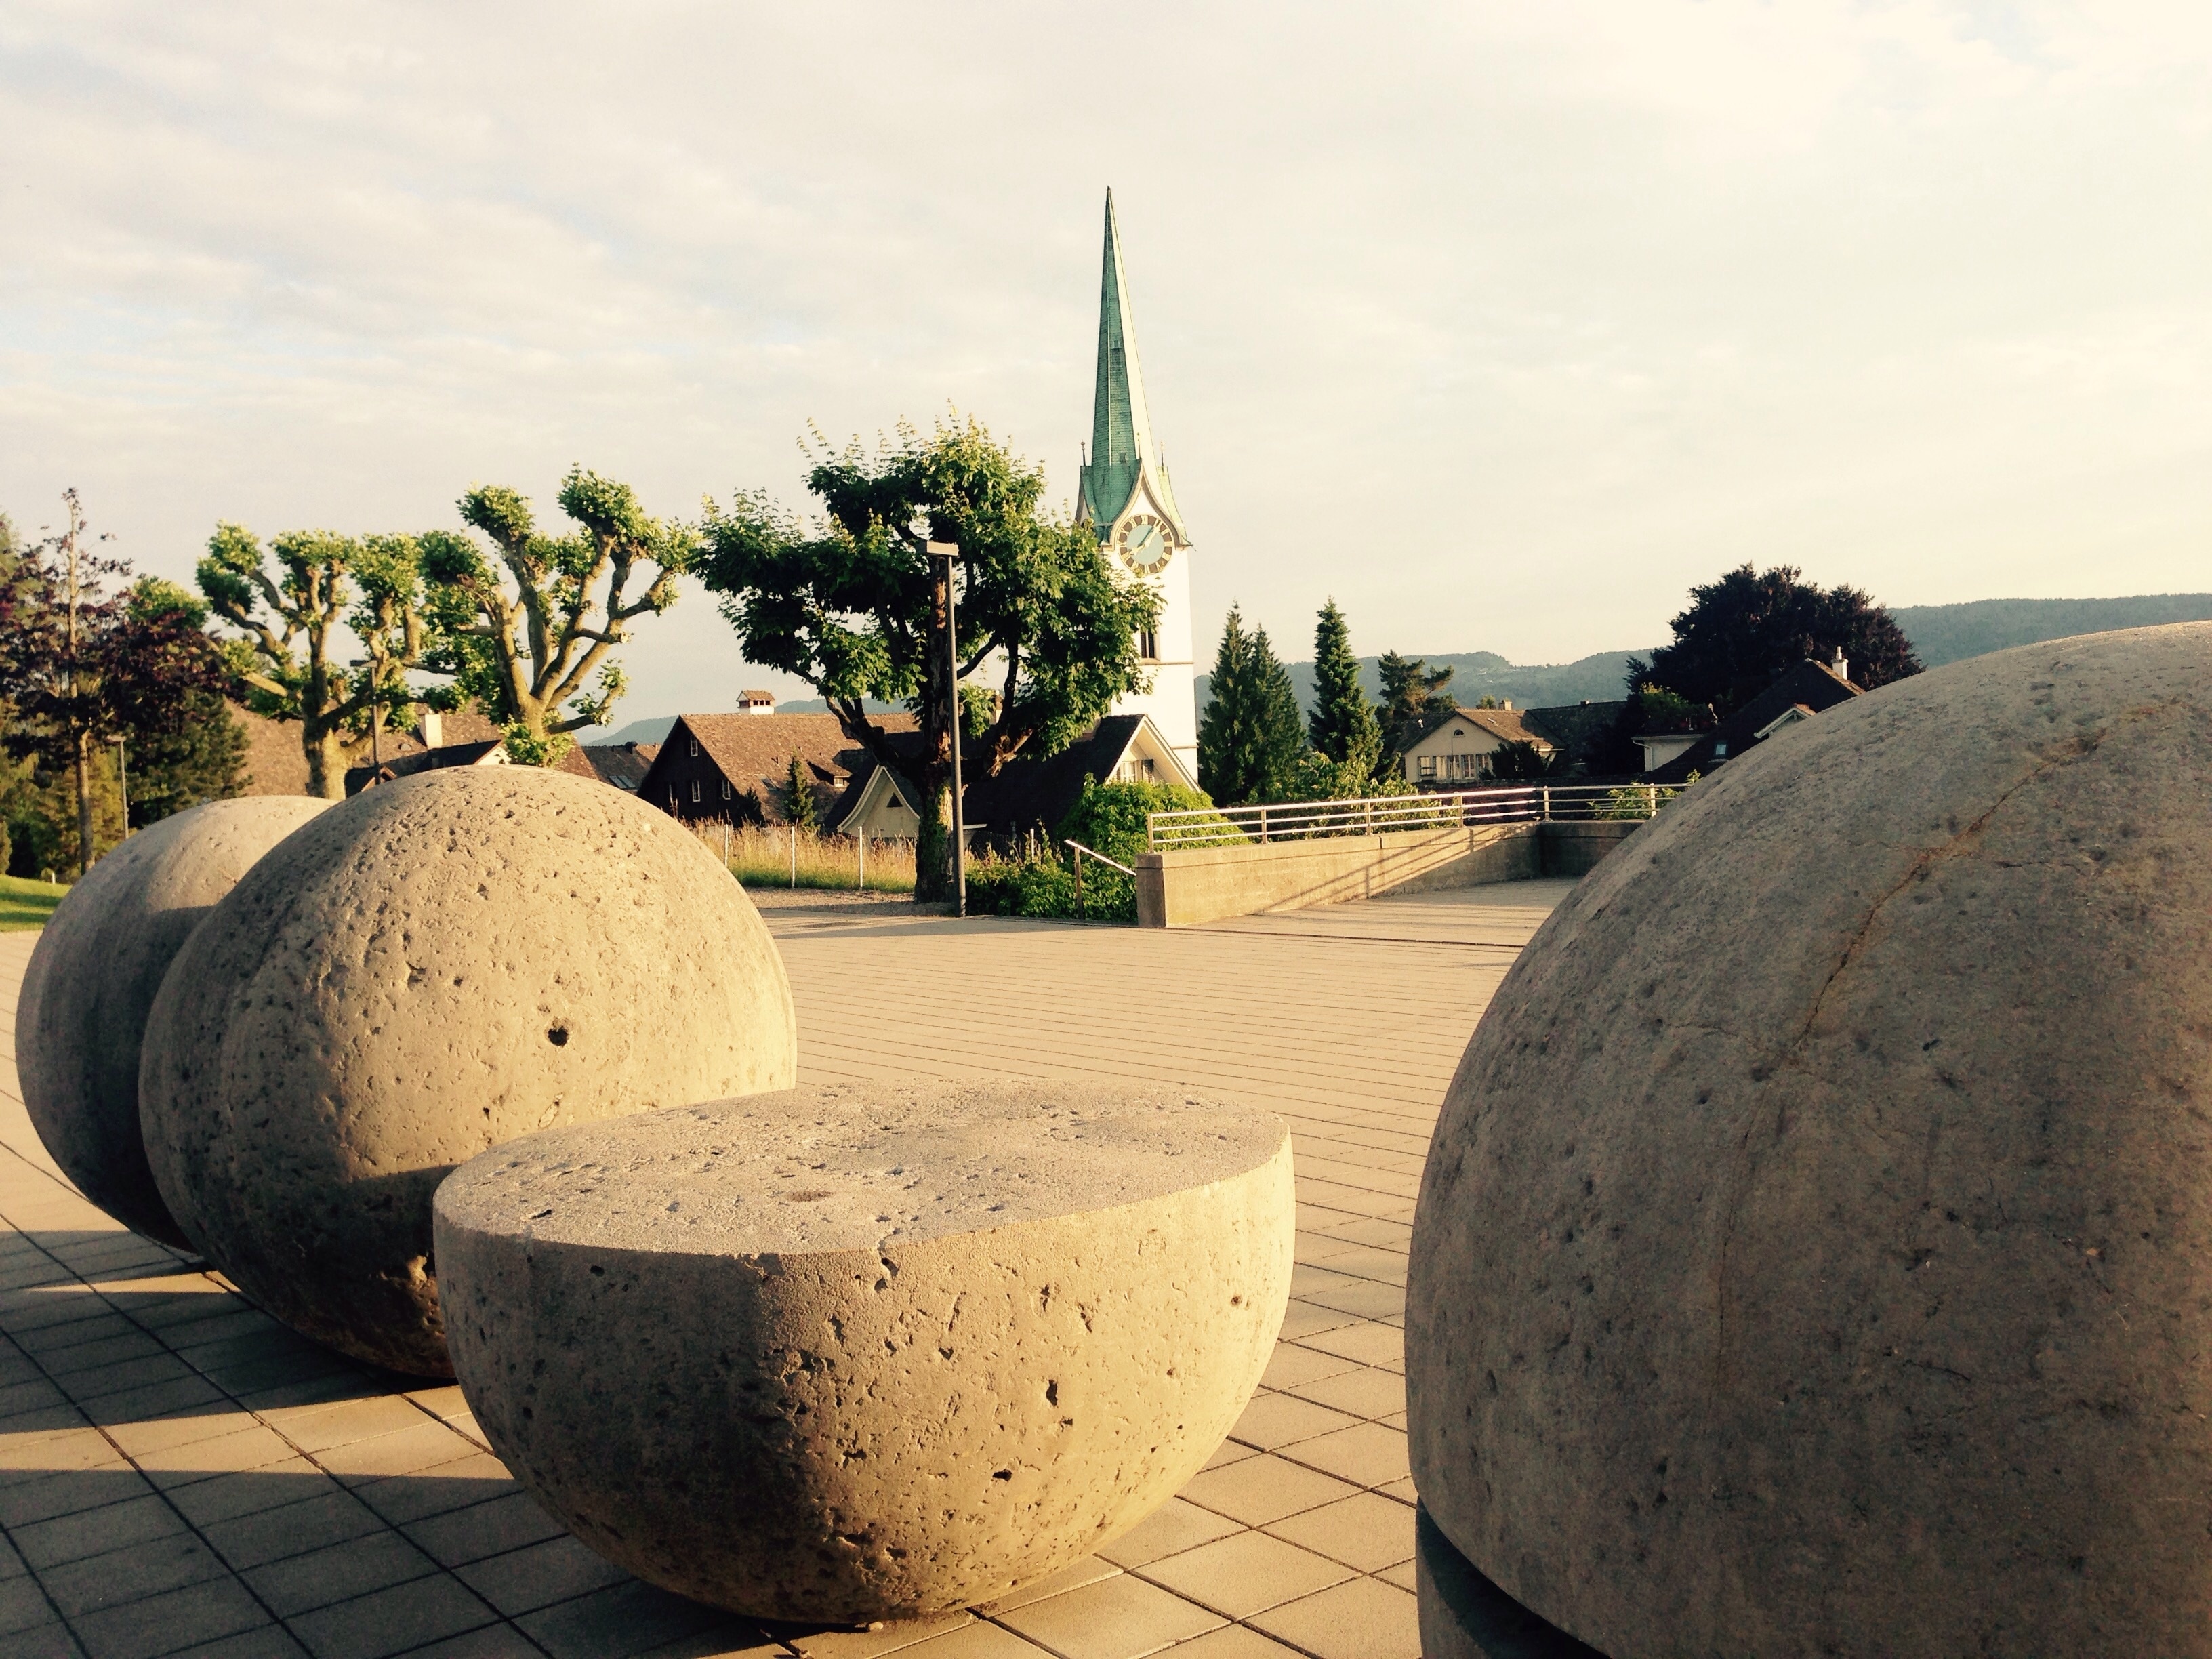 gray concrete round statues